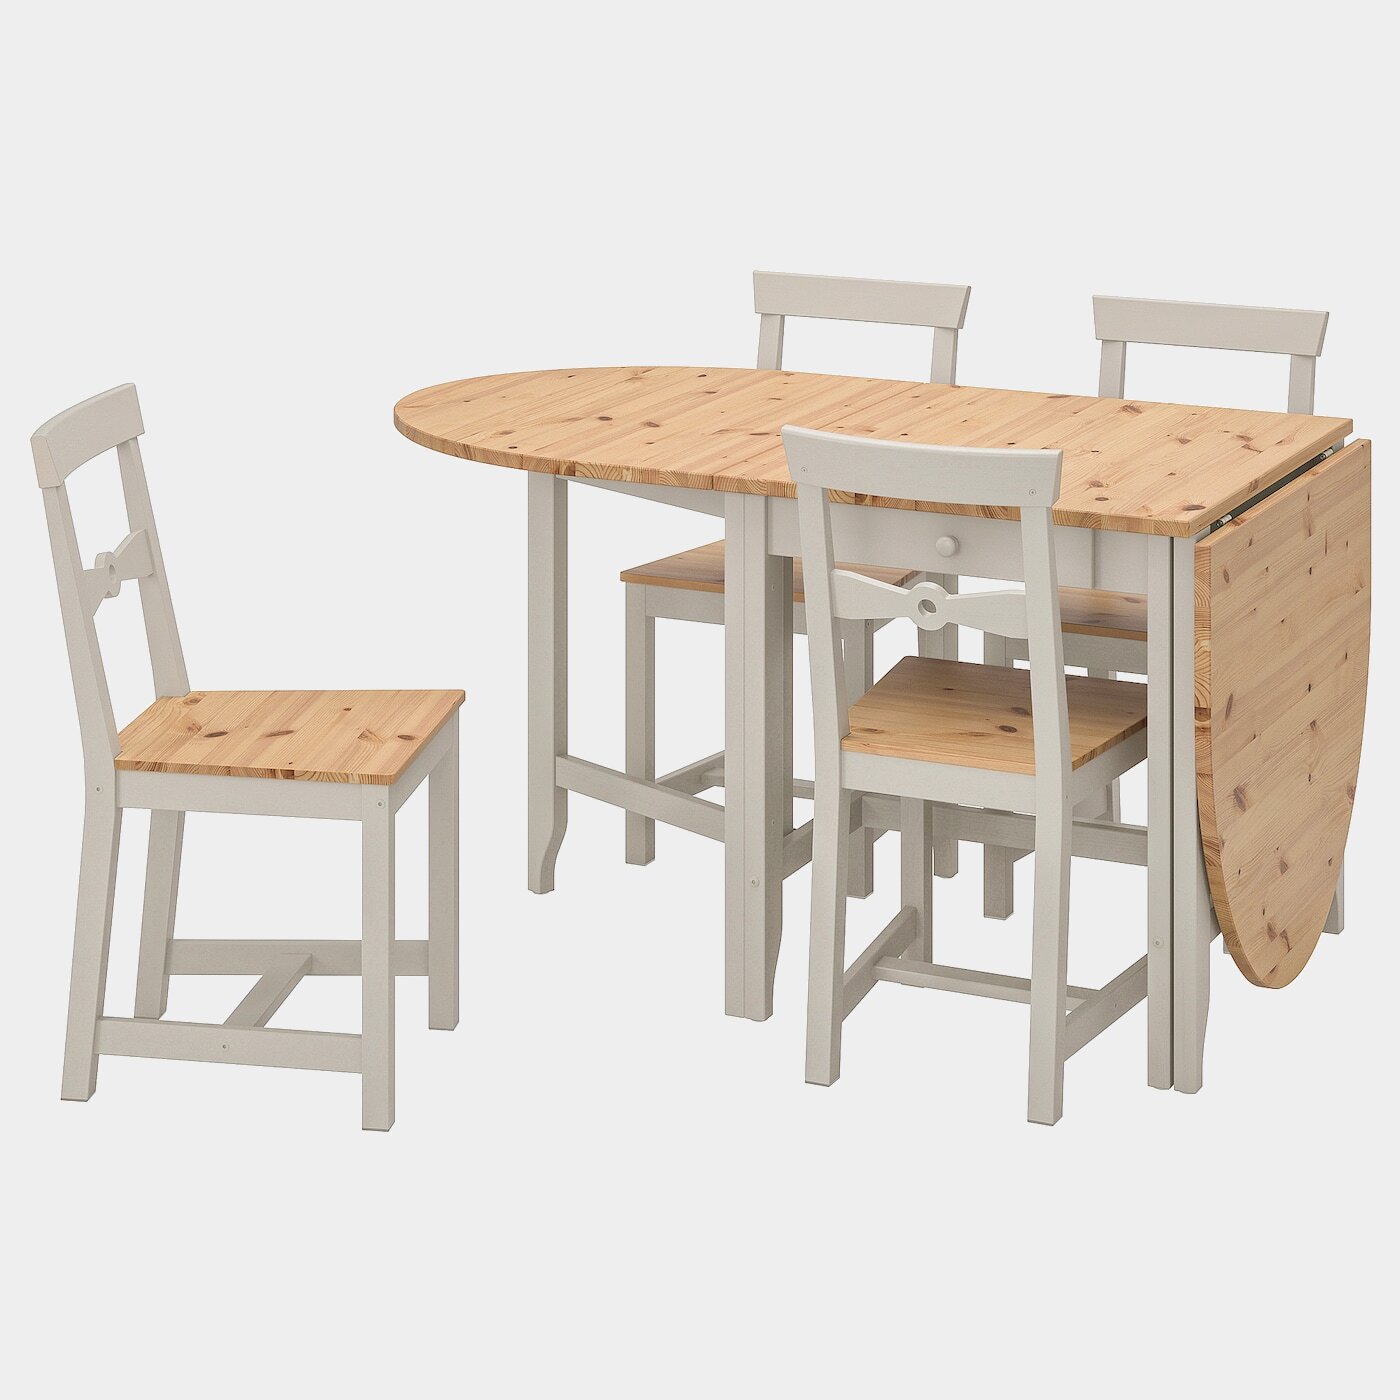 GAMLEBY Tisch und 4 Stühle  - Essplatzgruppe - Möbel Ideen für dein Zuhause von Home Trends. Möbel Trends von Social Media Influencer für dein Skandi Zuhause.